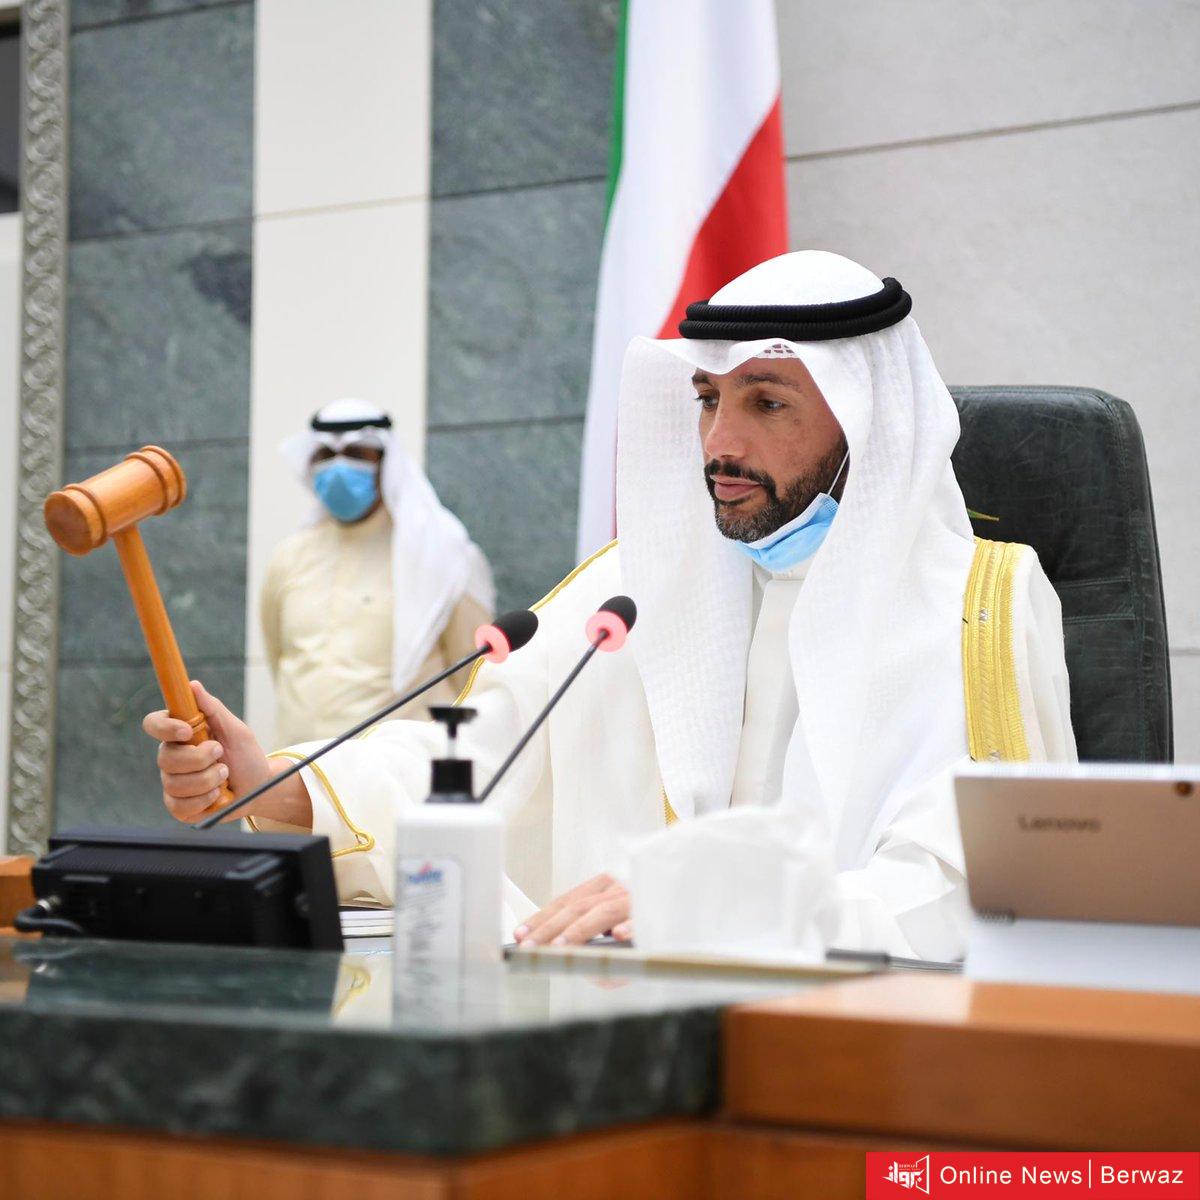 رئيس مجلس الأمة مرزوق الغانم يقرر عقد الجلسات عن بعد لمواجهة كورونا في الكويت